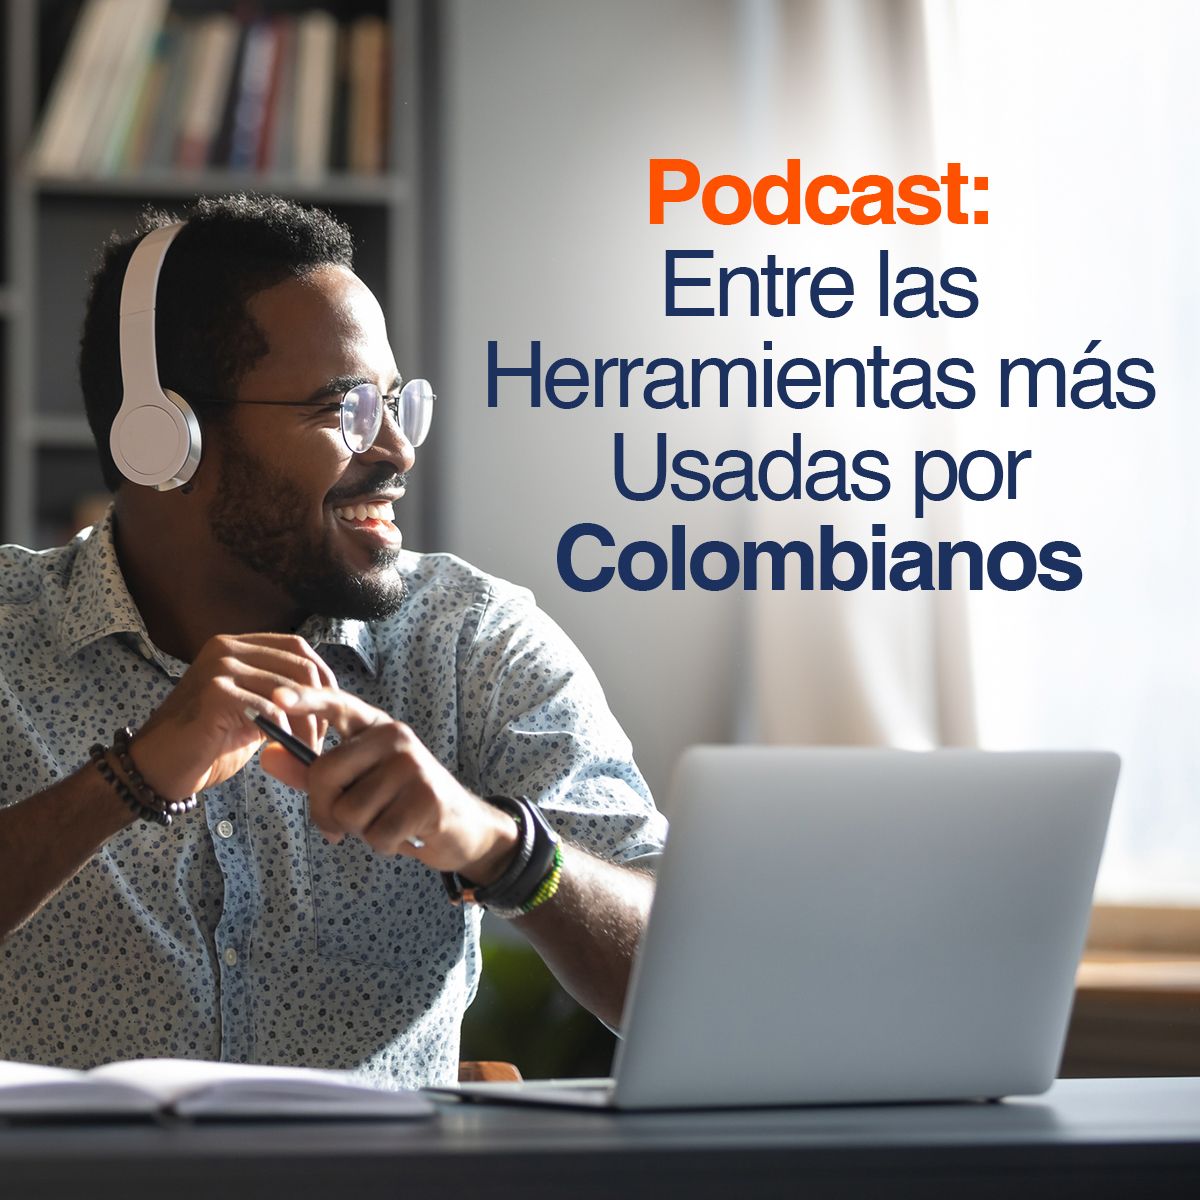 Podcast: Entre las Herramientas más Usadas por Colombianos